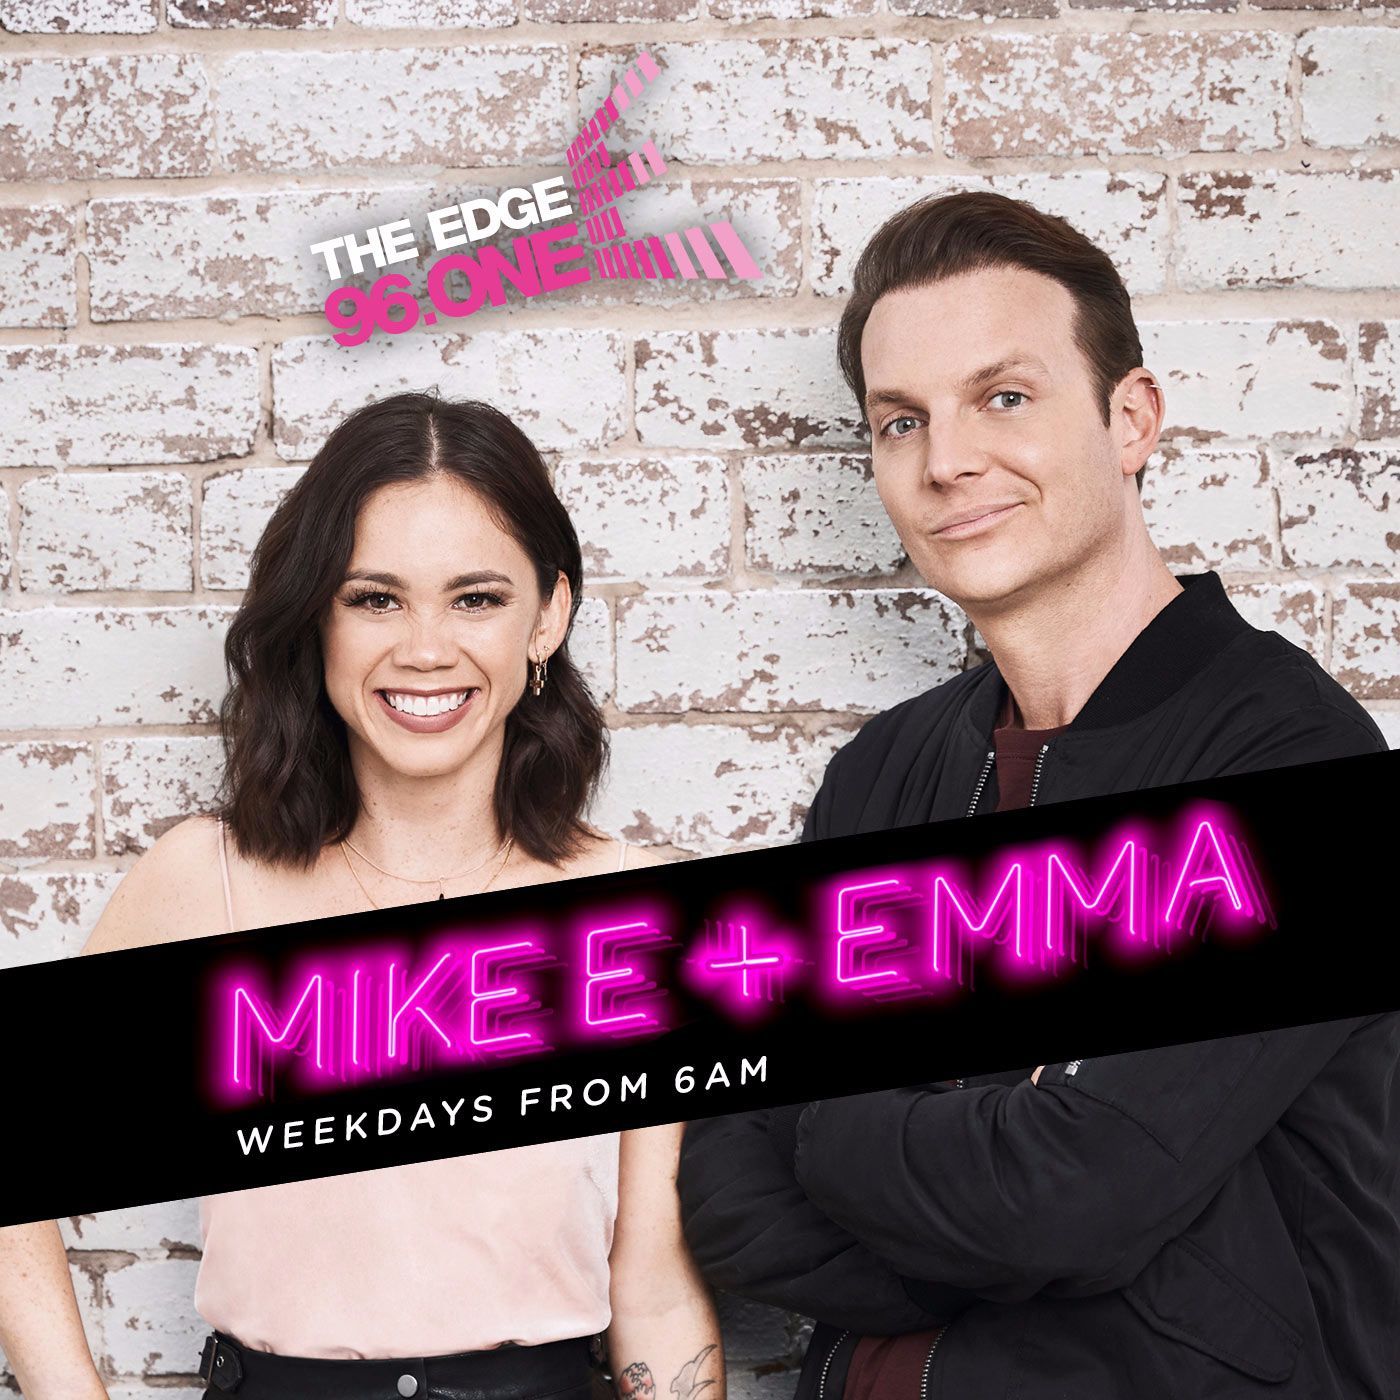 Mike E & Emma – The Edge